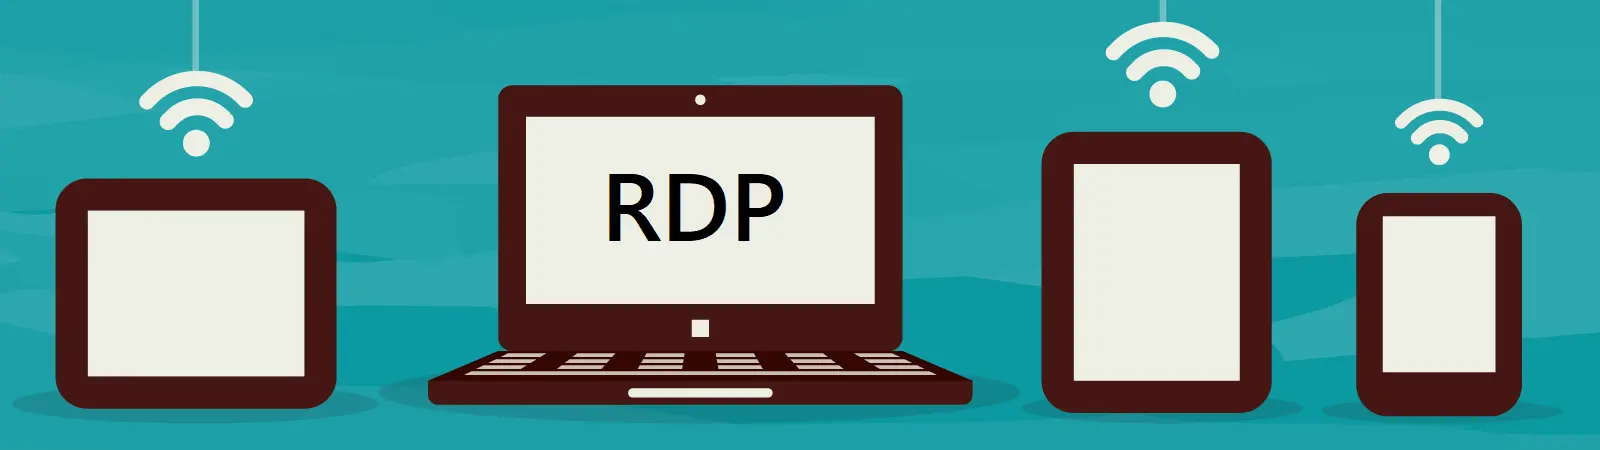 RDP a vzdálený přístup k počítačům